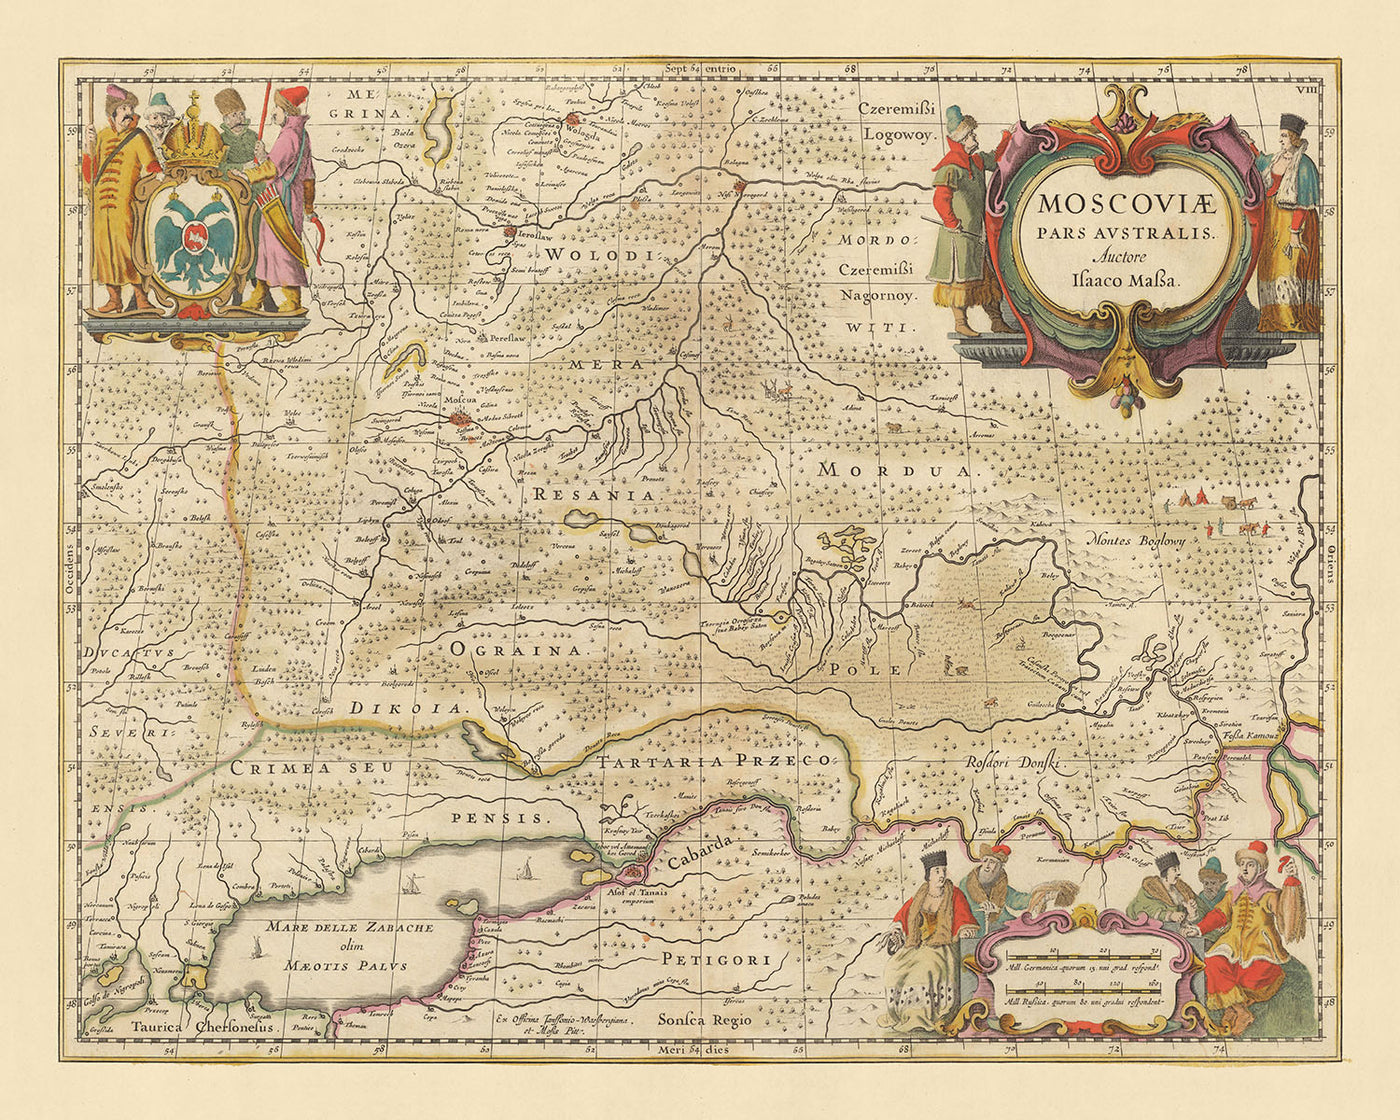 Old Map of Southern Russia by Visscher, 1690: Moscow, Yaroslavl, Vologda, Nizhny Novgorod, Rostov-on-Don